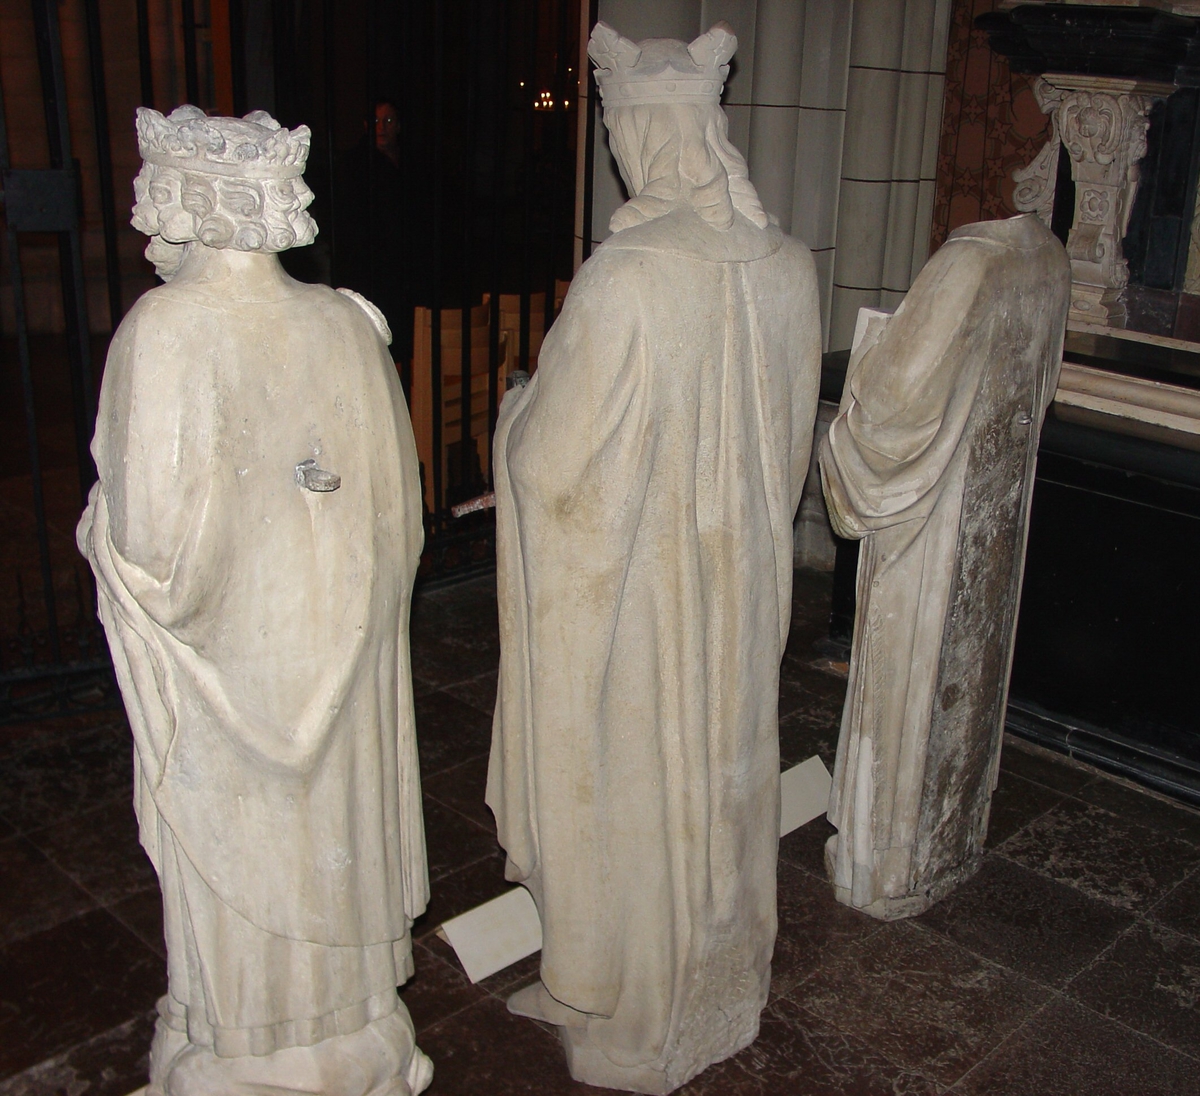 Sankt Olof (till vänster). Baksidan av skulpturen. På bilden syns dessutom Sankt Erik (i mitten) och Sankt Lars (till höger), Uppsala domkyrka, Uppsala 2005